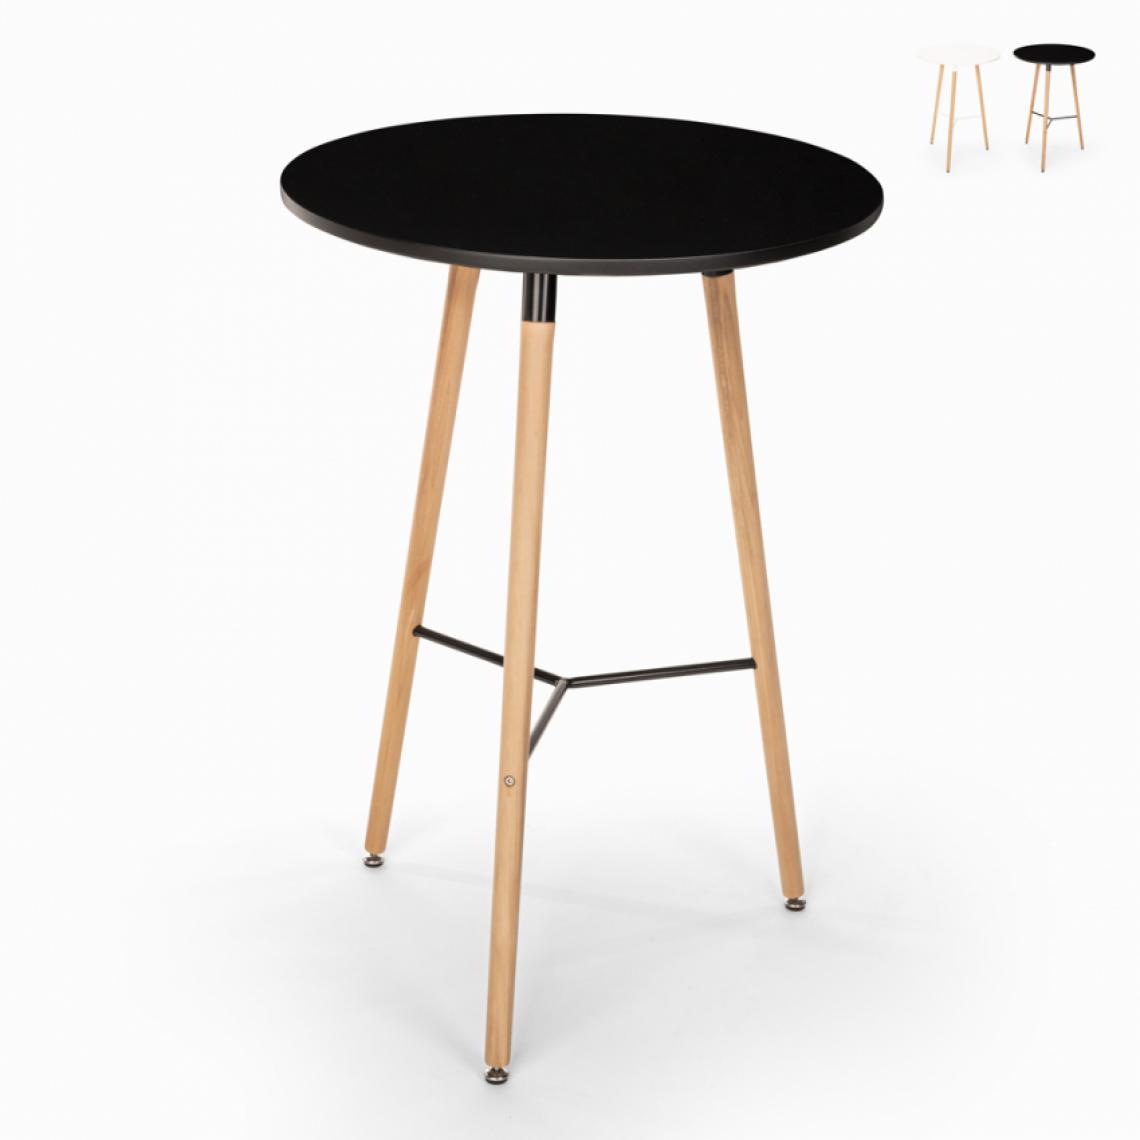 Ahd Amazing Home Design - Table haute pour tabourets design scandinave en bois 60x60 rond en bois Shrub, Couleur: Noir - Tables à manger